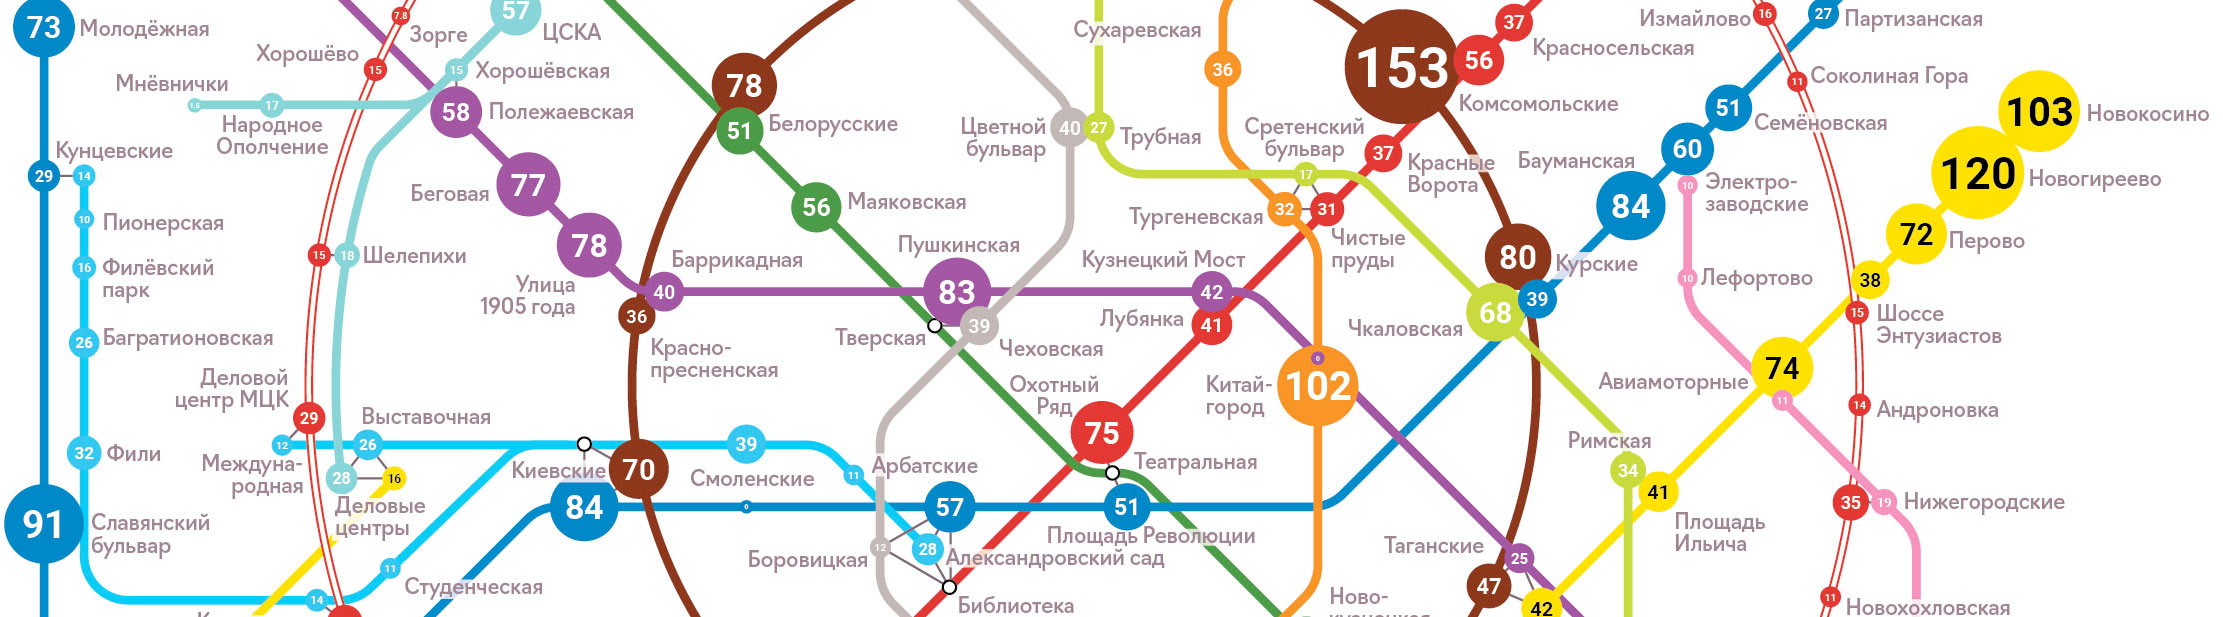 Тысячи пассажиров метро — загруженность московского метрополитена